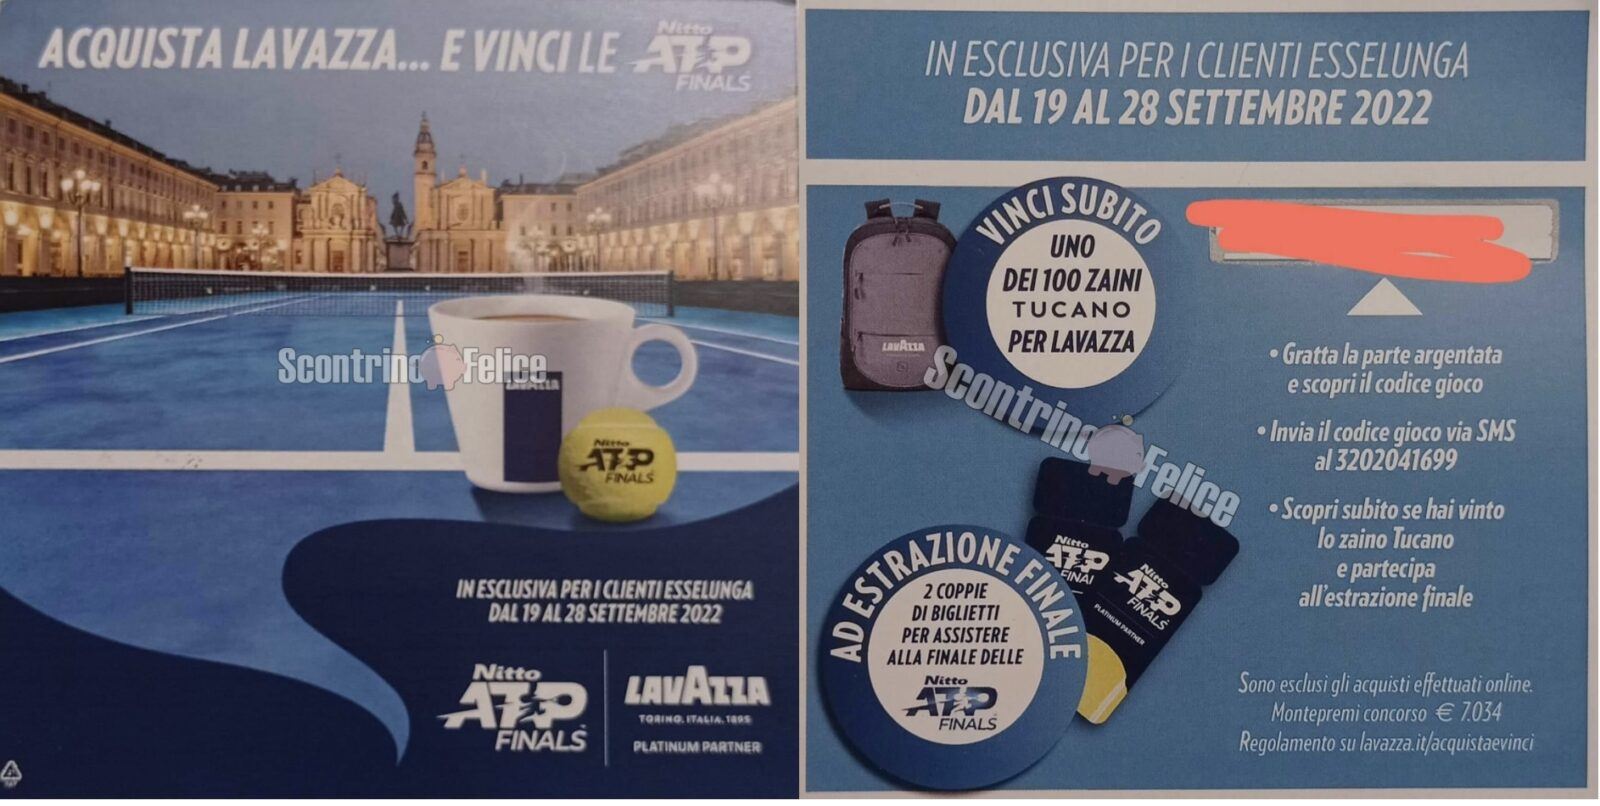 Concorso Lavazza da Esselunga: vinci 100 zaino Tucano e la finale delle Nitto ATP Finals 2022 2